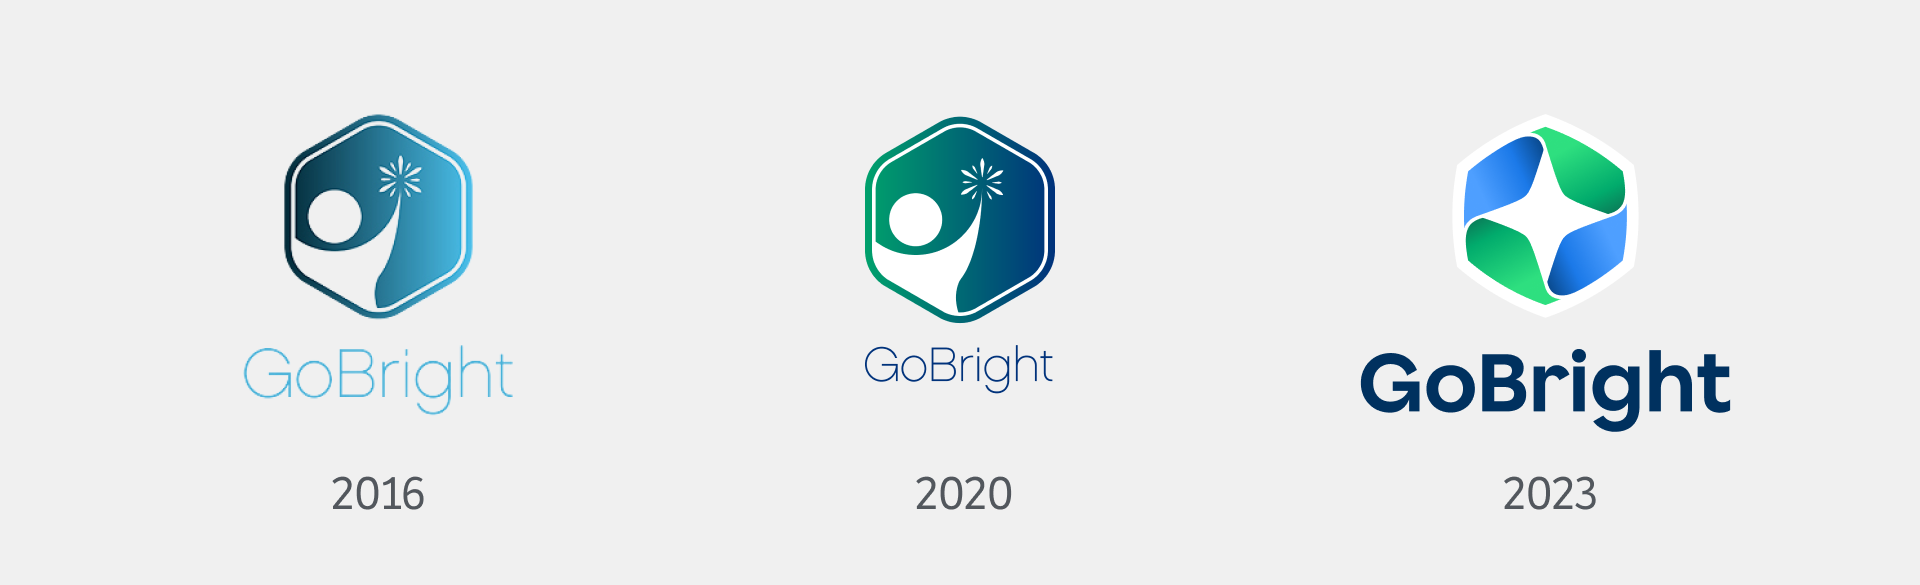 GoBright - Identité d'entreprise - logo tout au long de l'année - Rebranding